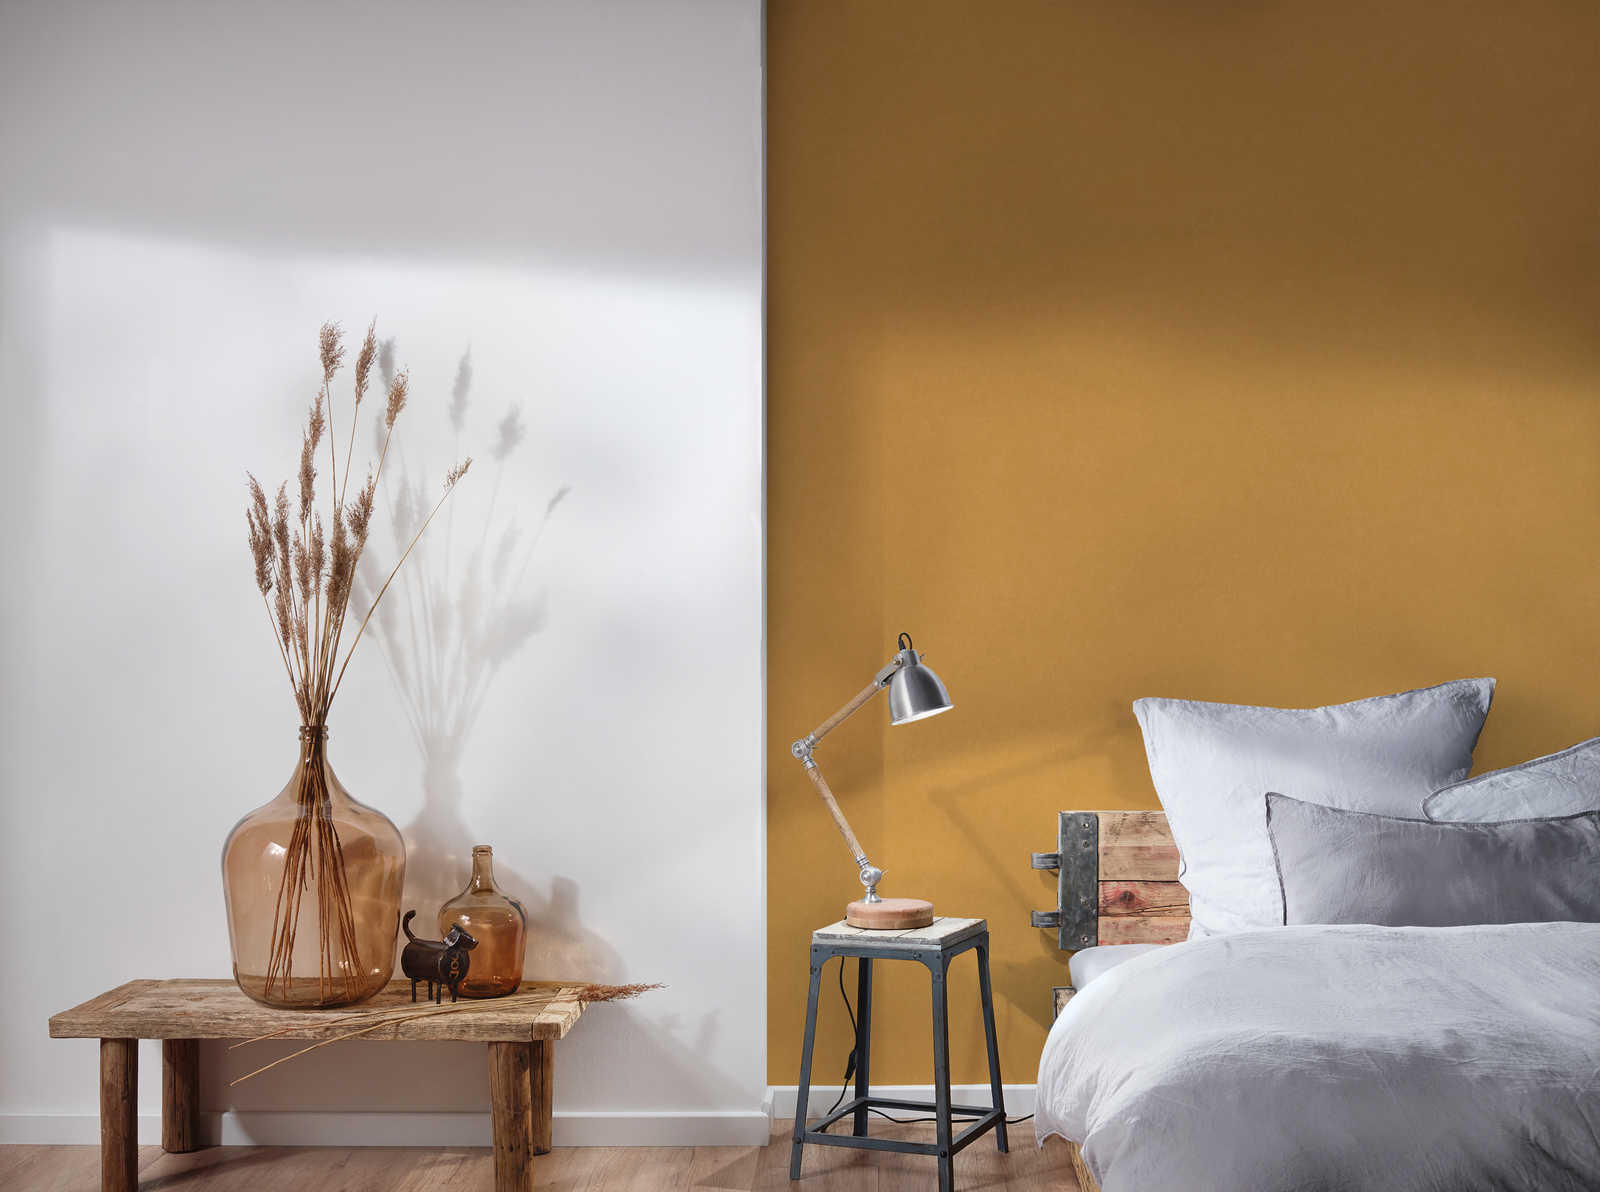             Linen look wallpaper with rustic texture design - yellow
        